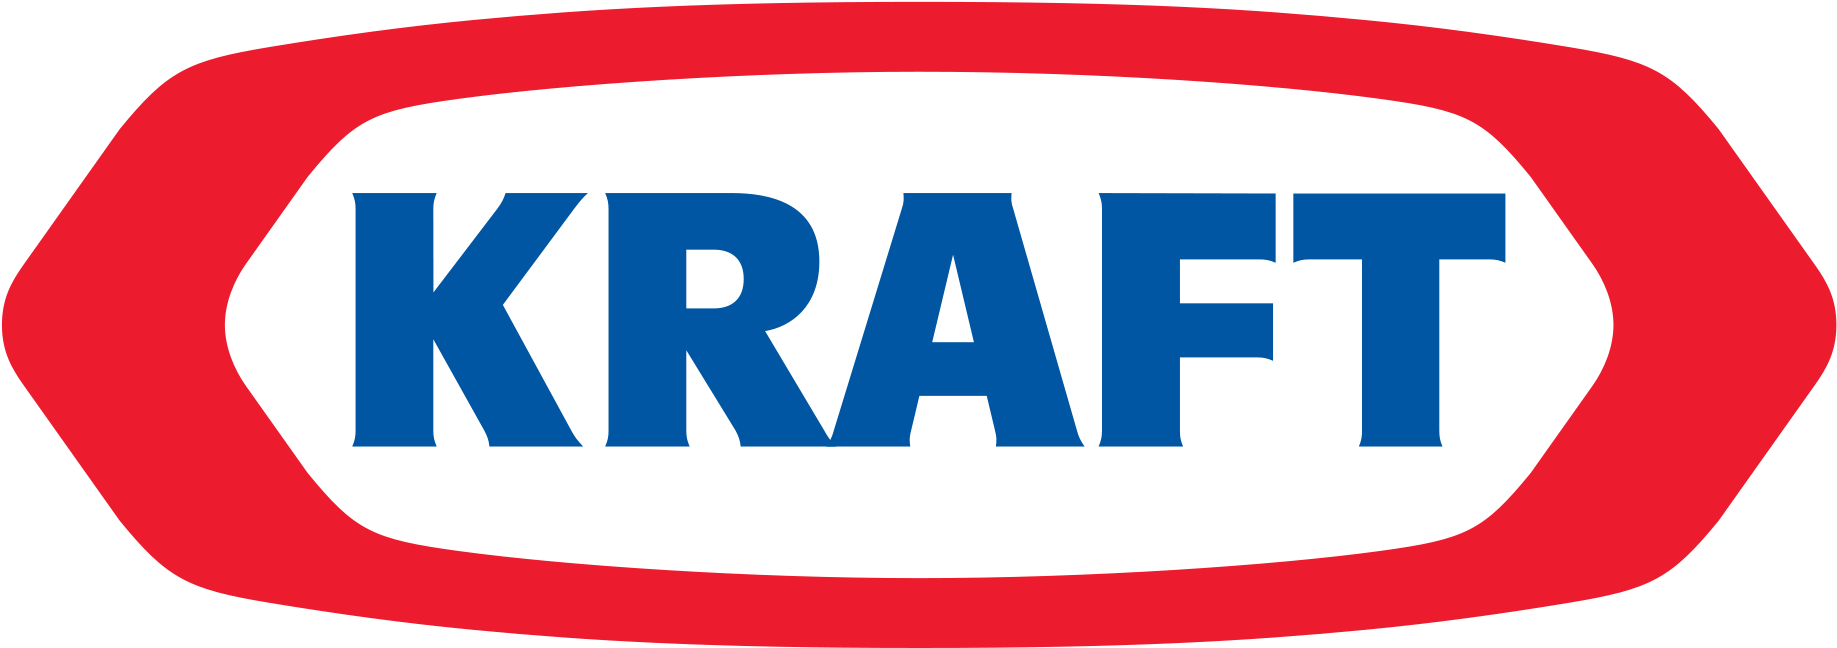 Kraft Logo Png (2000x1000)